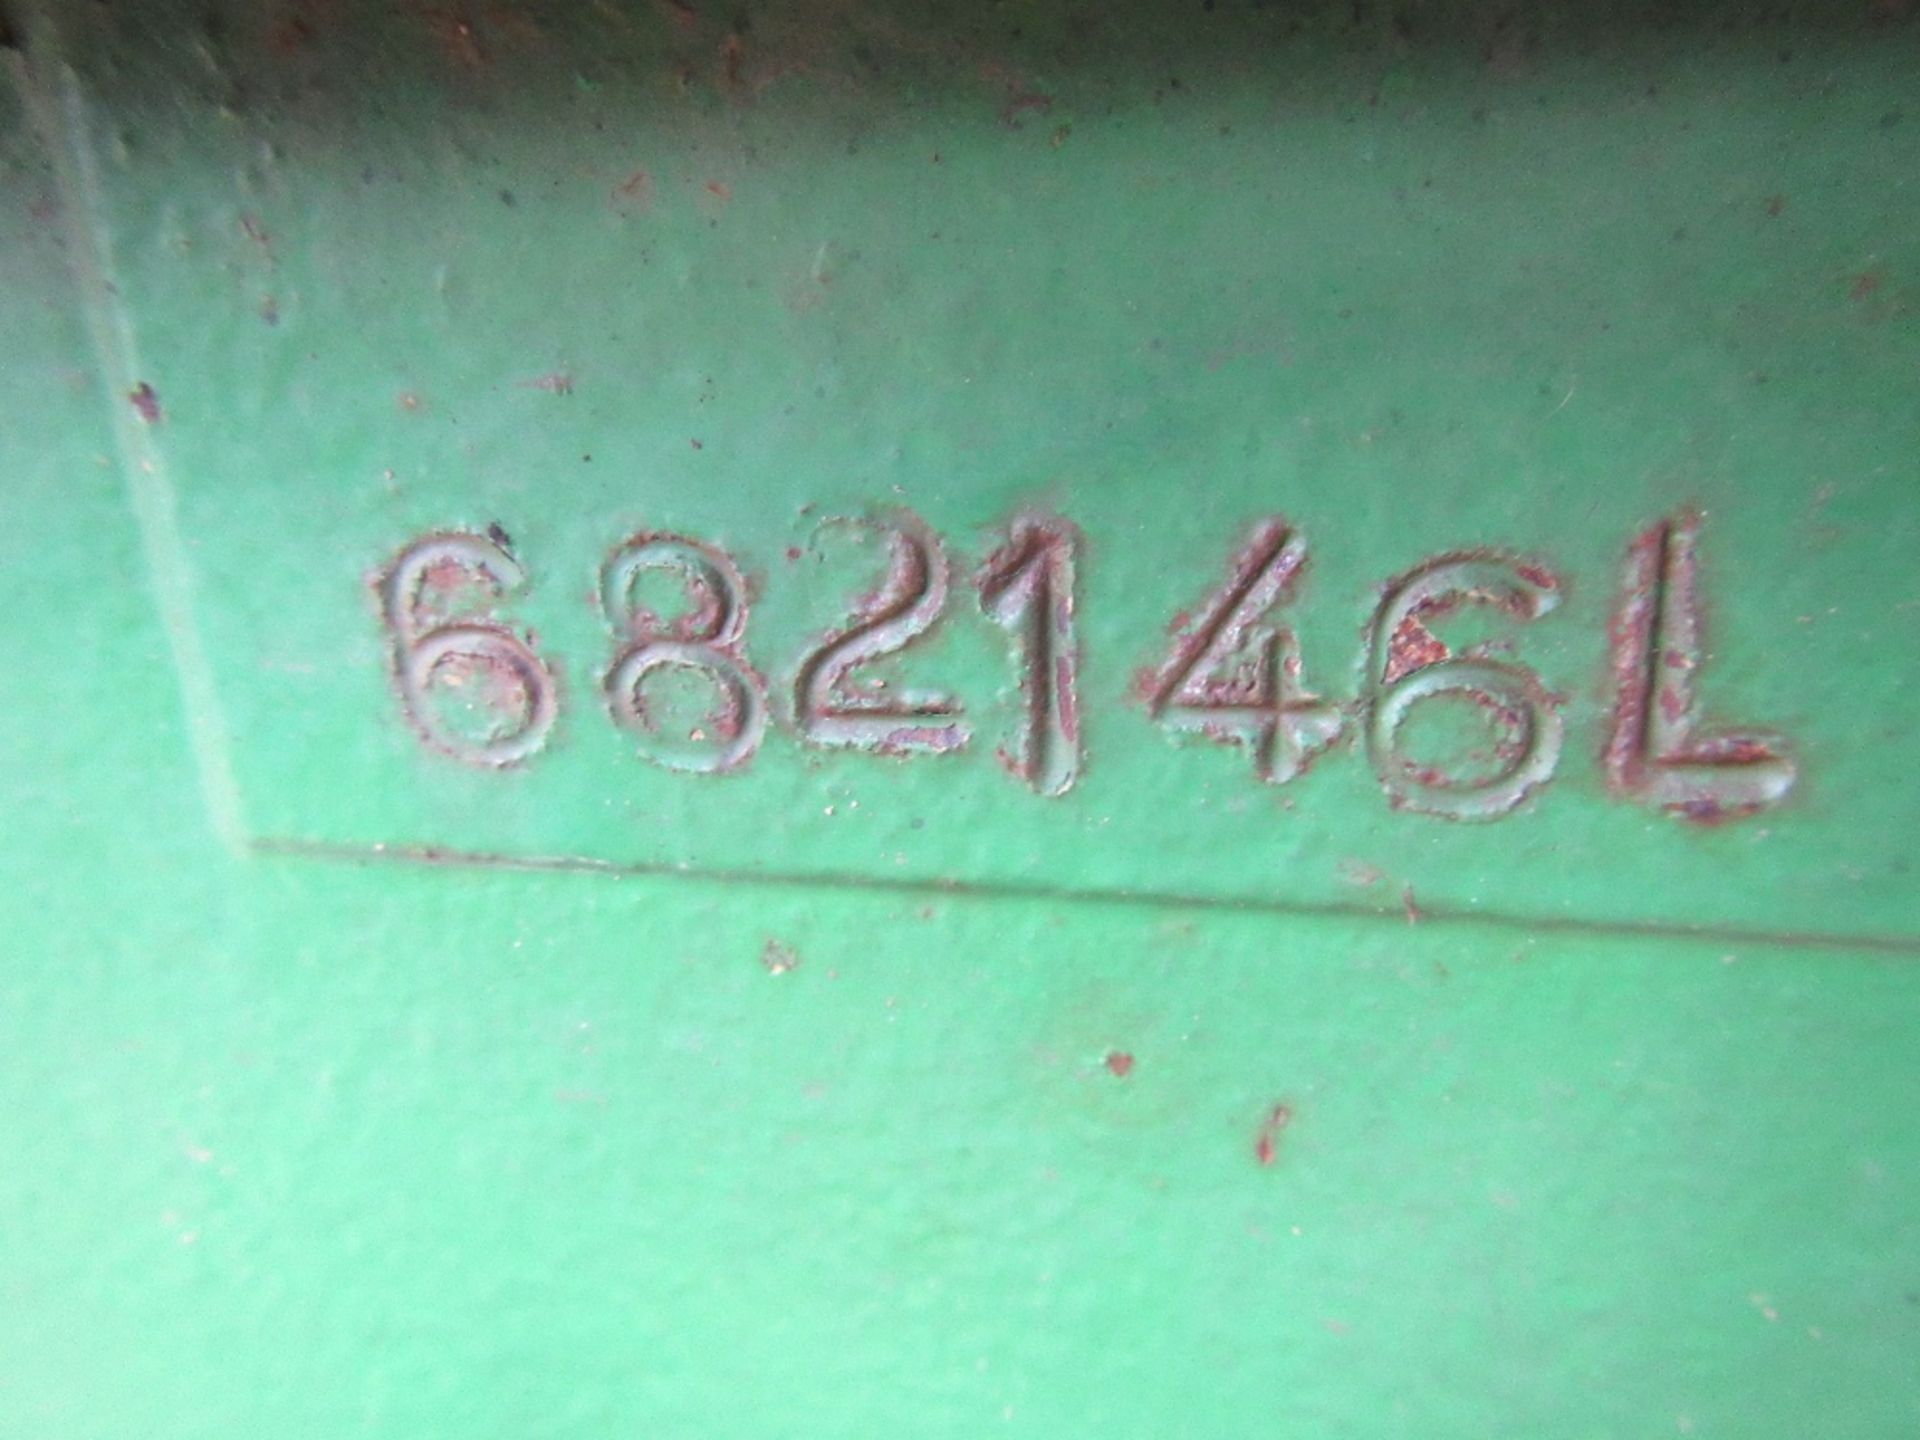 John Deere 3050 4wd Tractor c/w Hi Lift Reg. No. G683 HUX Ser. No. 682146 - Image 16 of 16